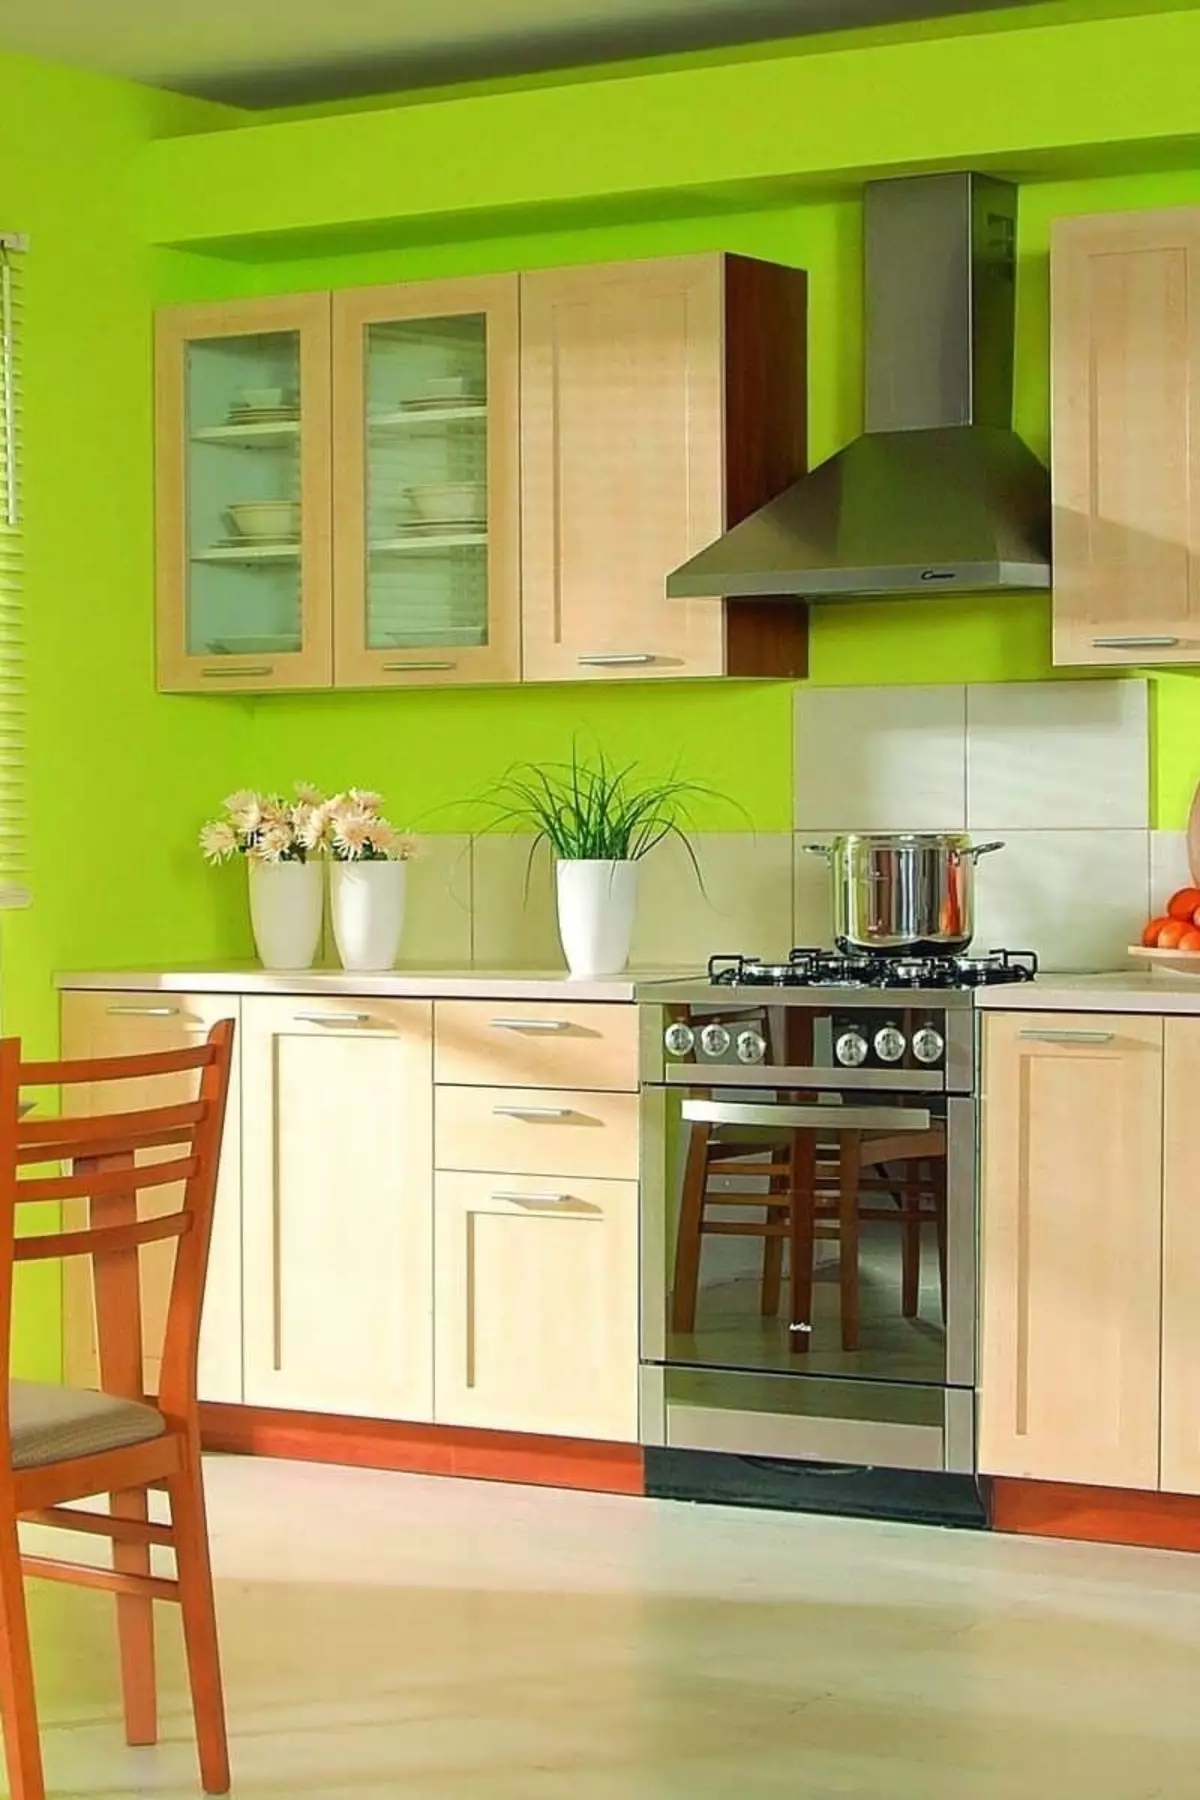 Kanîya kesk (111 Wêneyên): Headset Green Kitchen in Sêwirana Navxwe, Hilbijartina Wallpaper Green, Grey-Green û keskek kesk, reş û kesk û kesk û kesk 9554_72